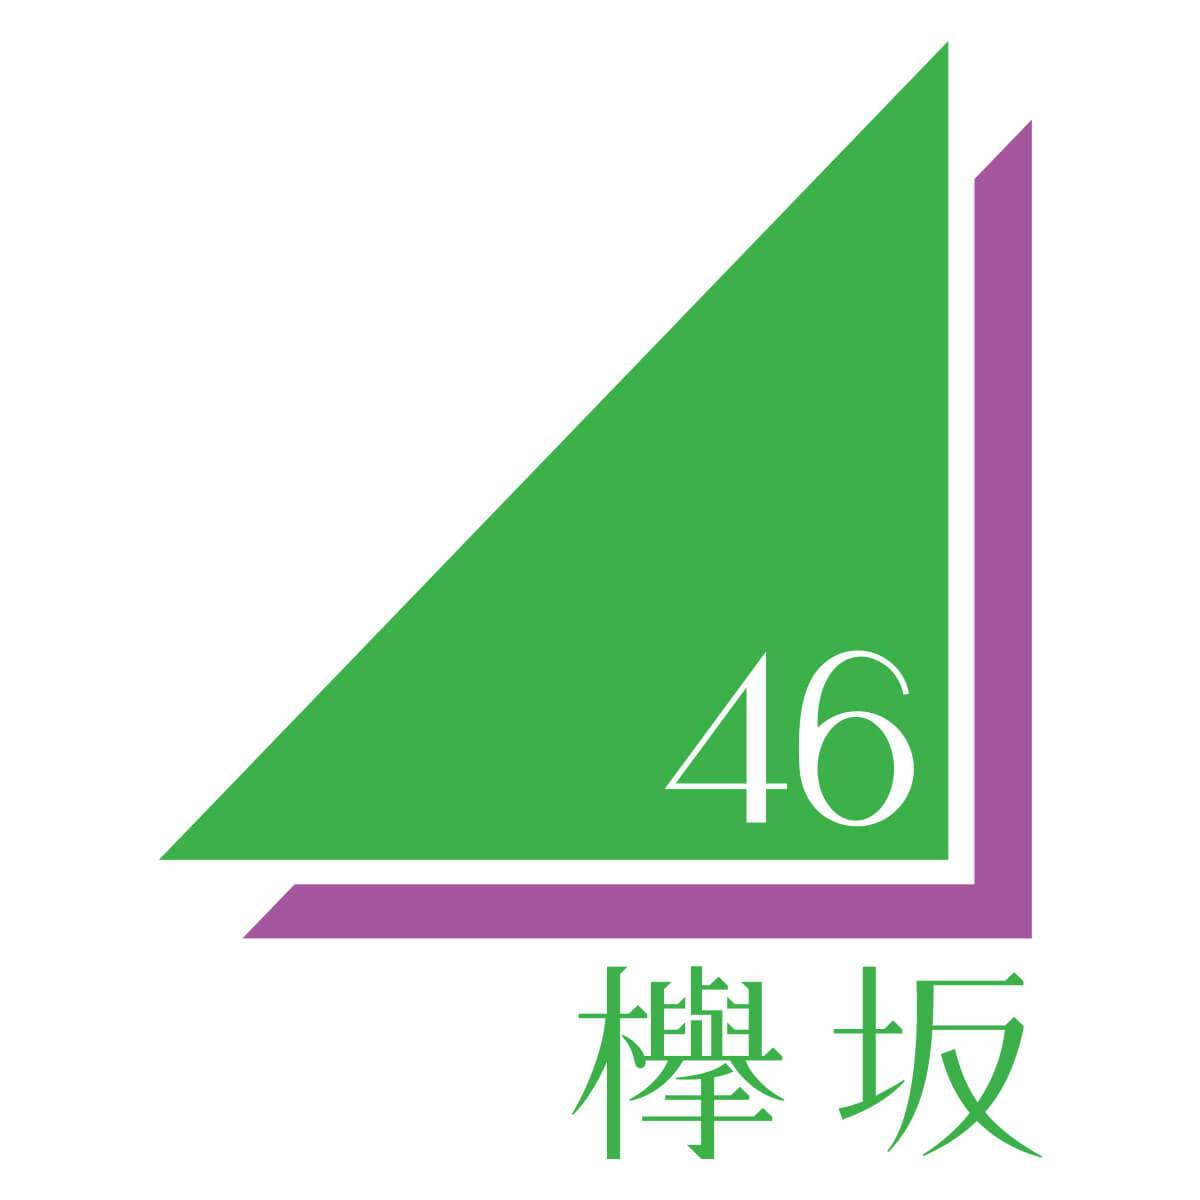 後半では欅坂46最新握手人気メンバー神7をご紹介！